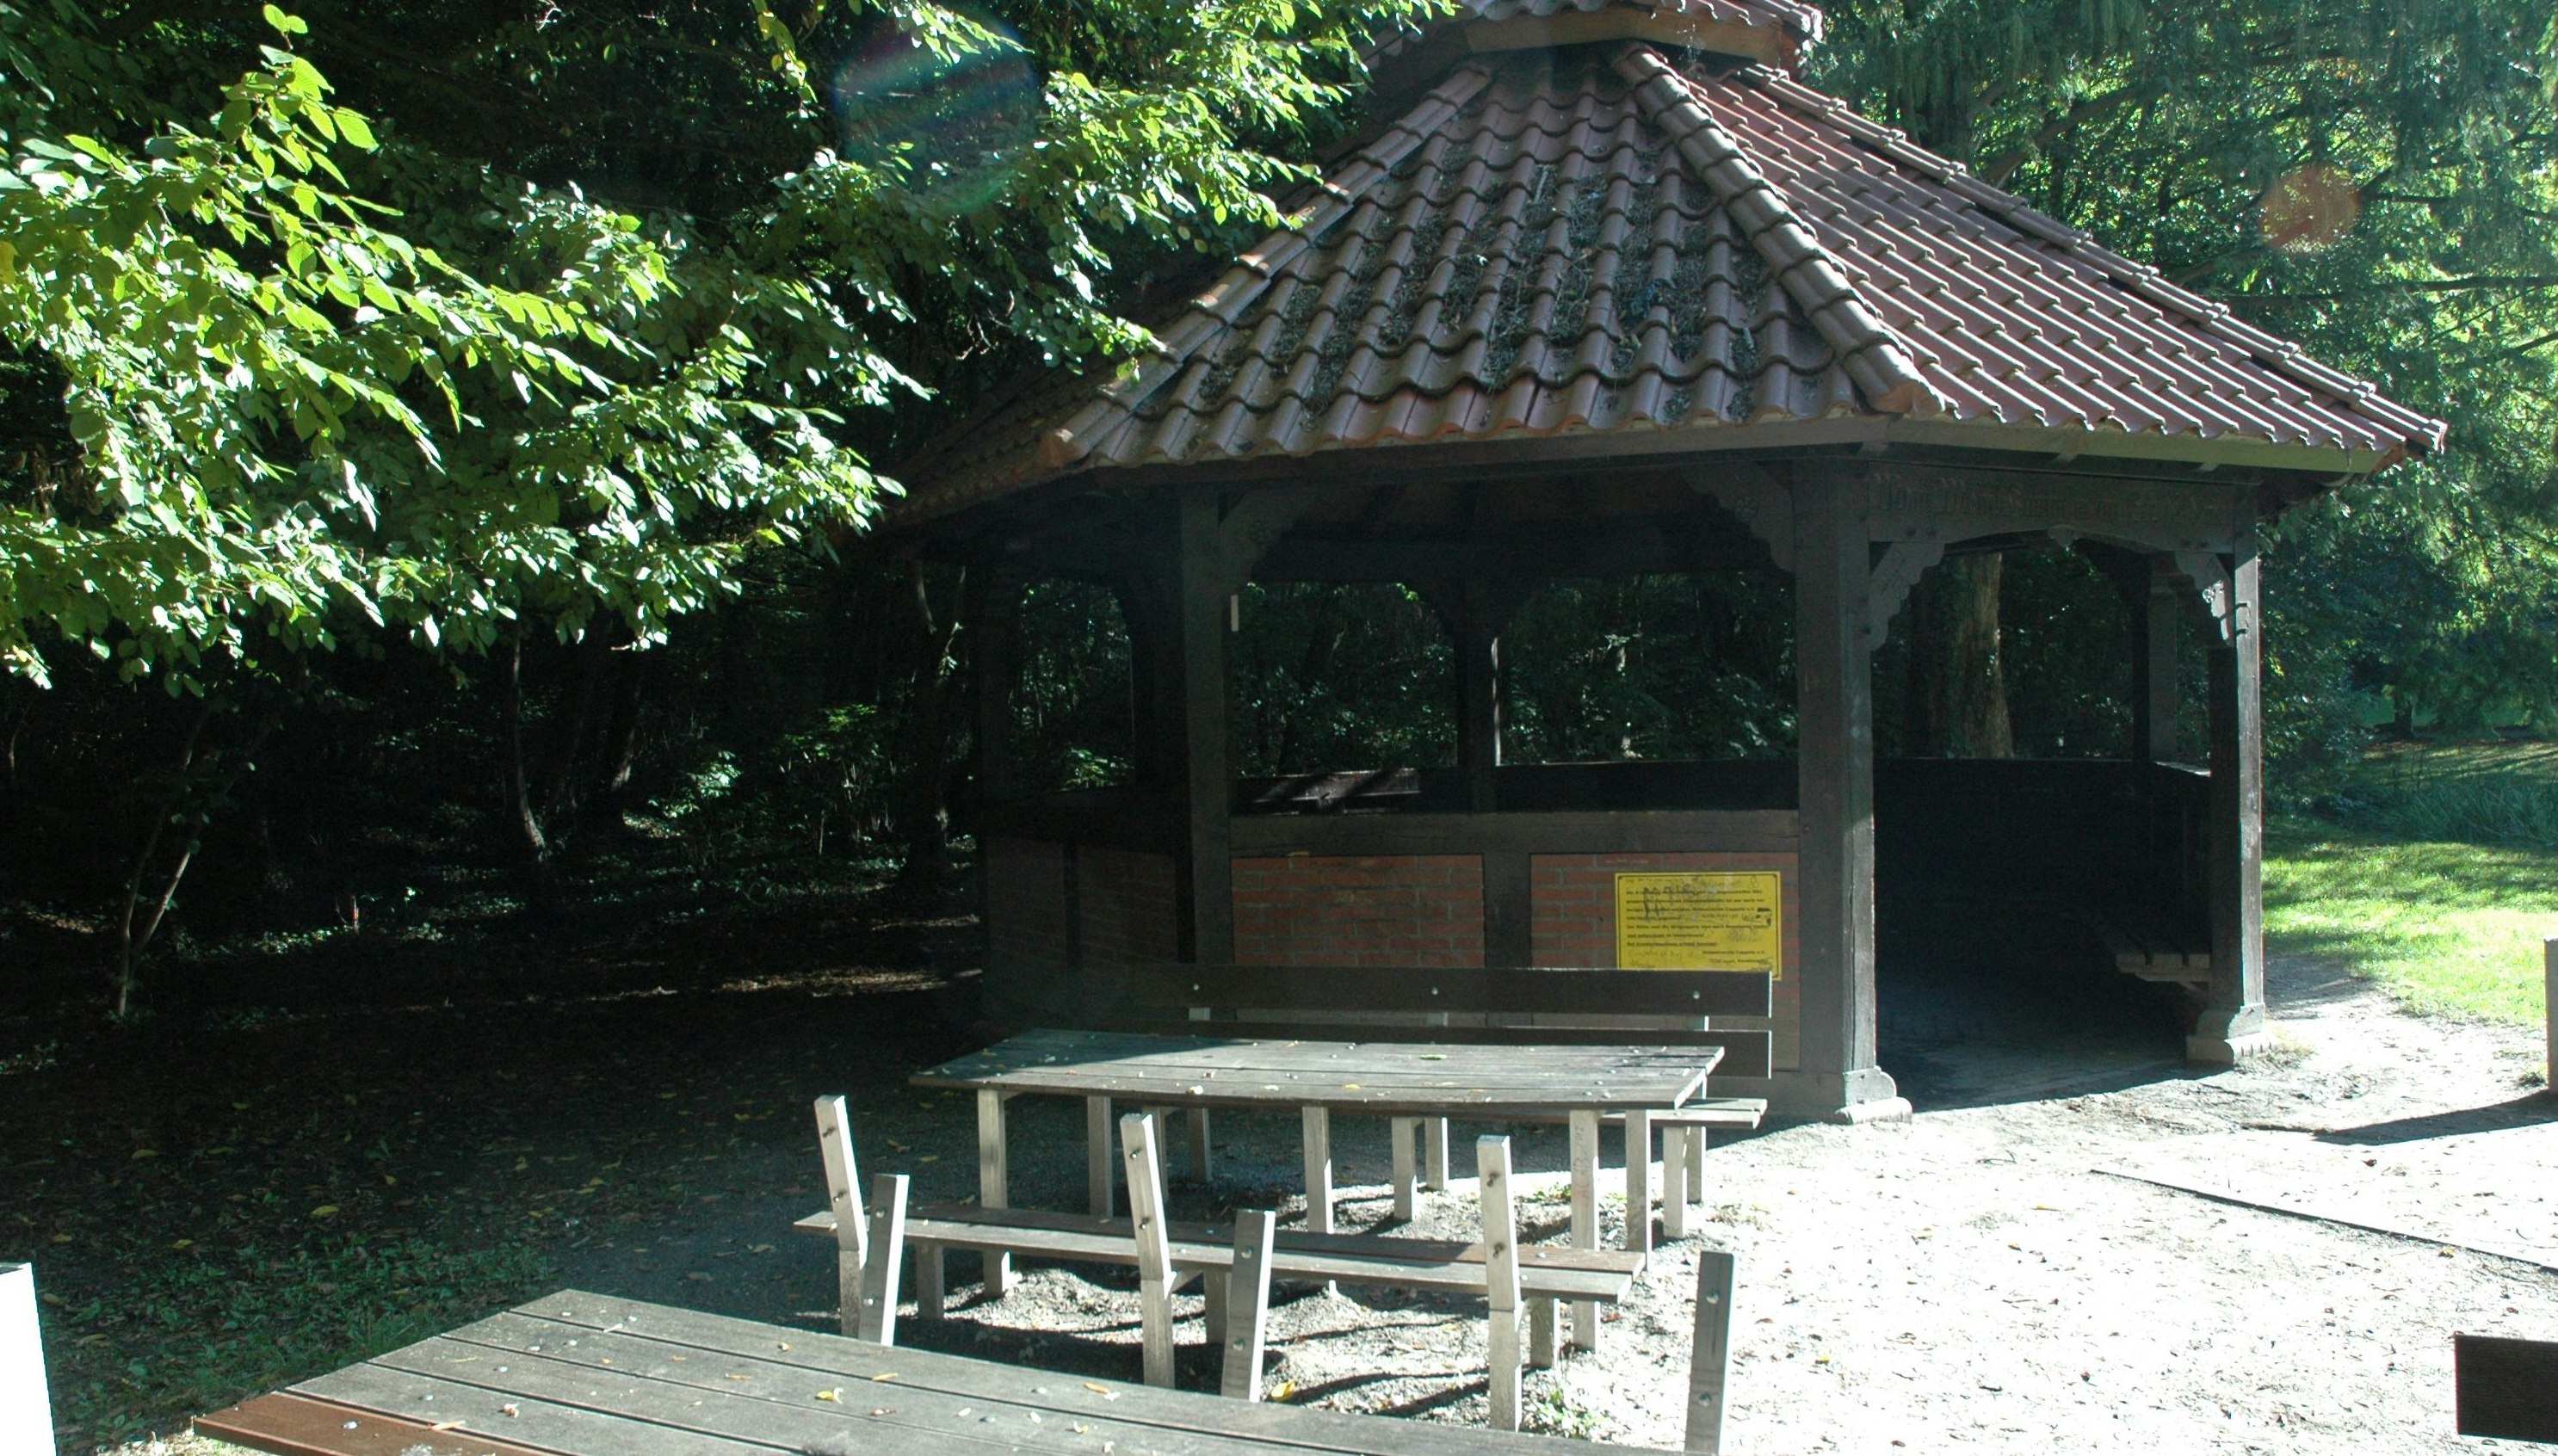 Bänke beschädigt, Hütte beschmiert: Der Grillpavillon auf dem Cappelner Dorfplatz ist oft das Ziel von Vandalen. Foto: Heinrich Kaiser